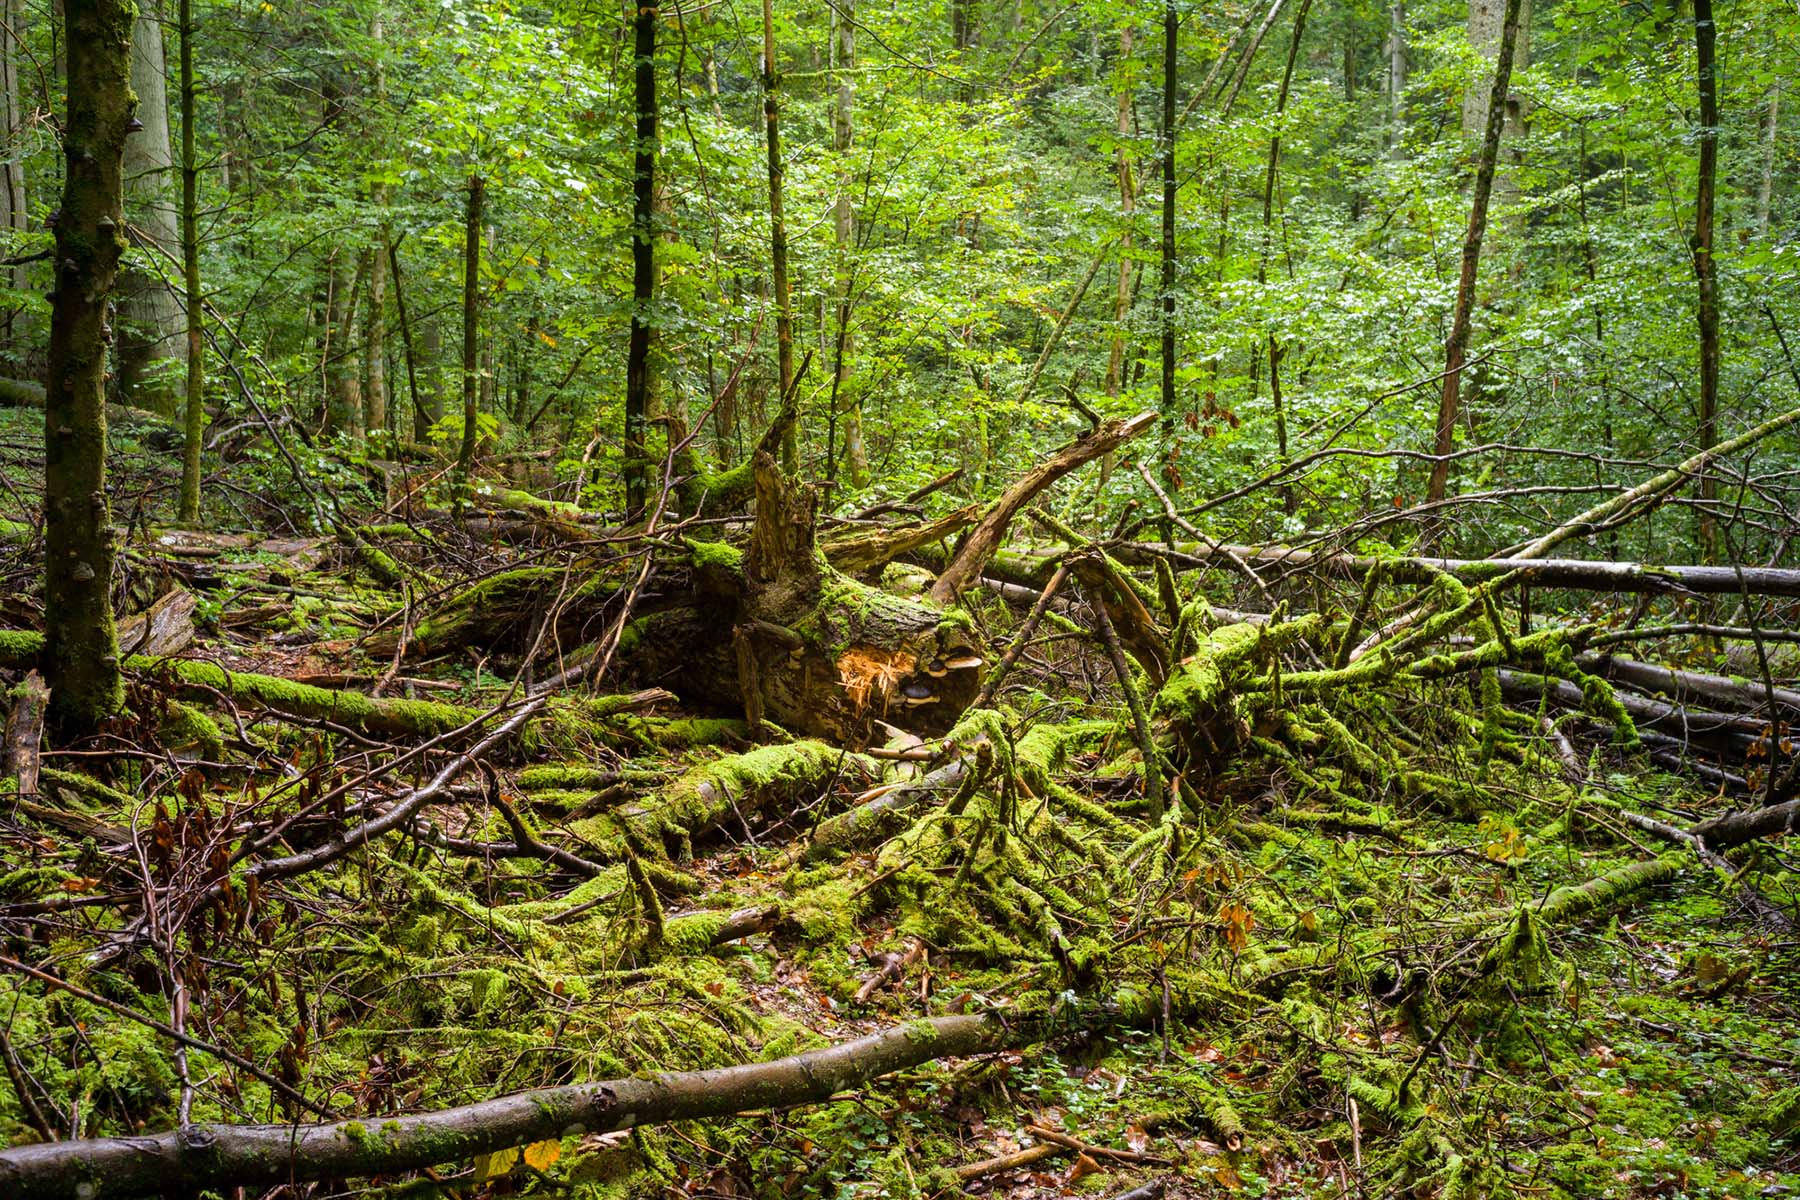 Totholz spielt eine wichtige Rolle bei der Entwicklung eines Nutzwaldes hin zu einem urwaldähnlichen Wald und dient der Biodiversität. (Bild: Caroline Fink / AS Verlag)